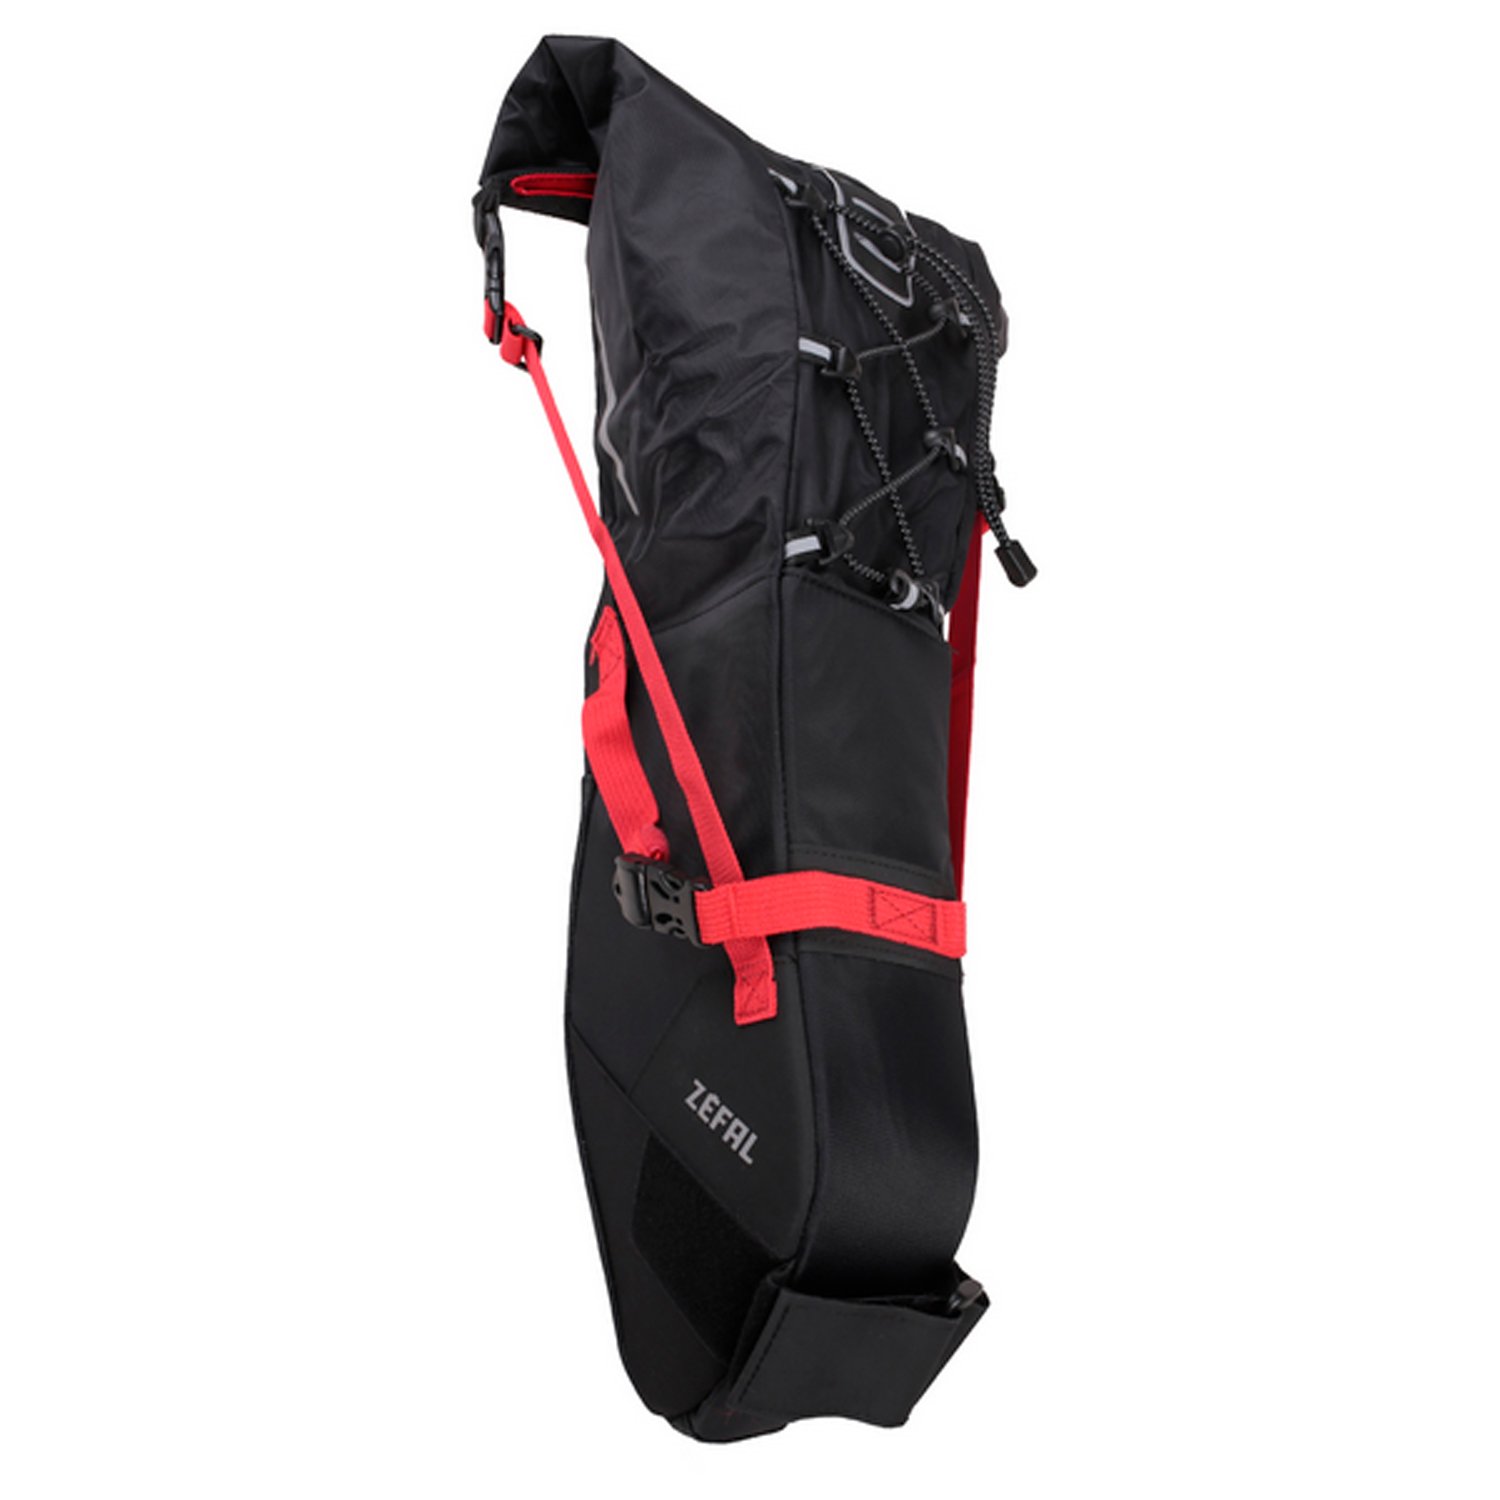 Сумка велосипедная Zefal Z Adventure R11 Saddle Bag, подседельная, объем от 5 до 11L, красный/черный, 2023, 7001 mutsy сумка для коляски nio adventure